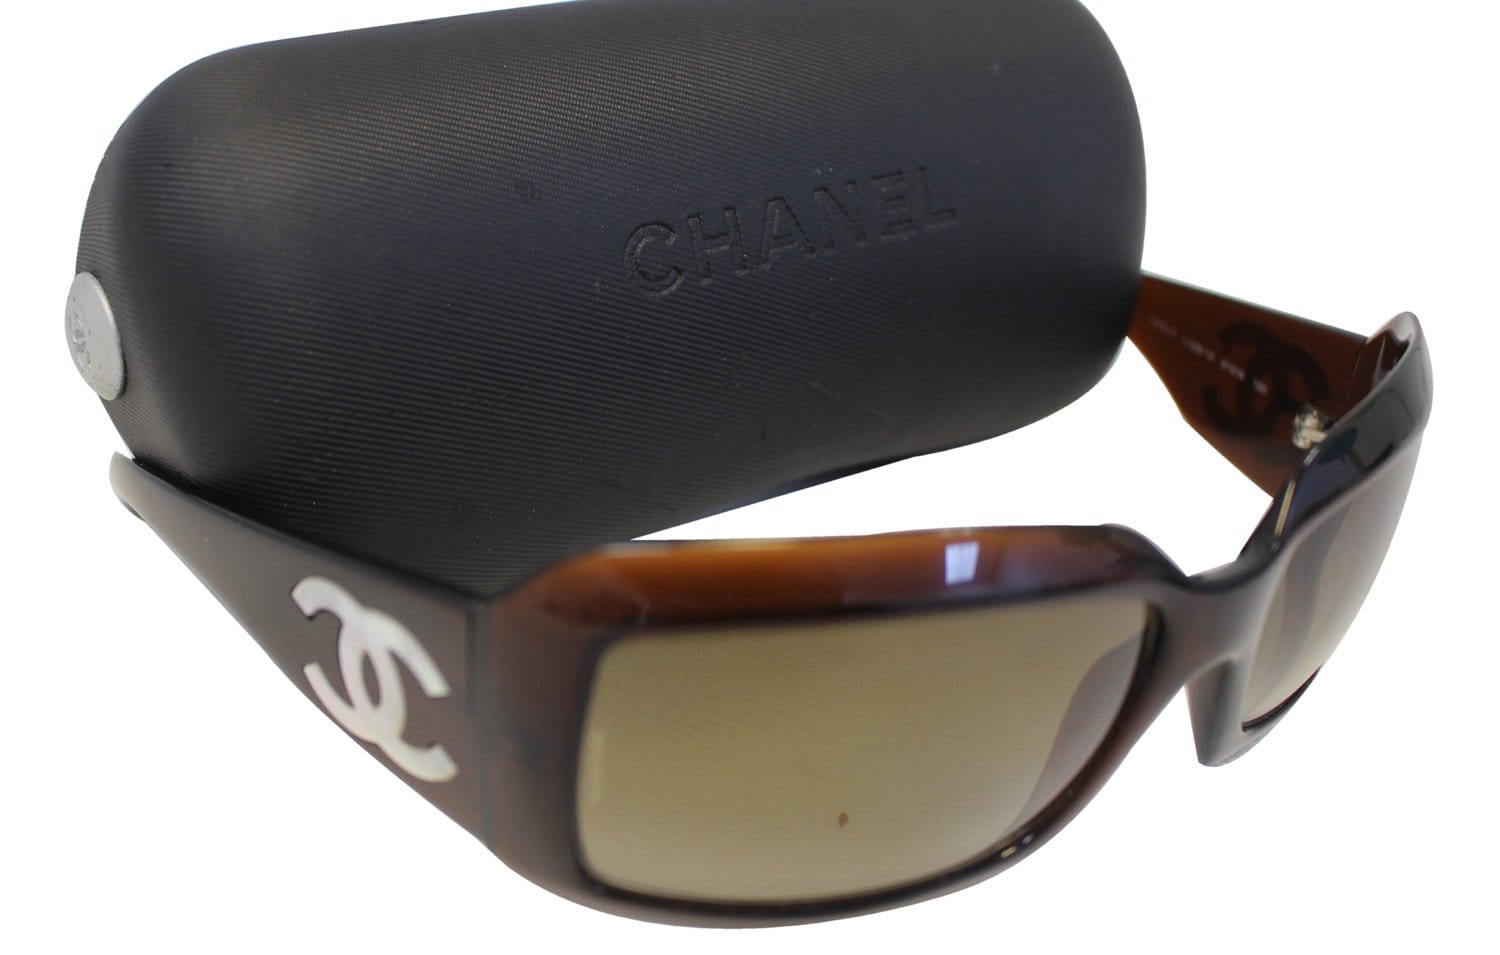 Chanel Sunglasses For Women - CHANEL Pearl Sunglasses 5076 CC Logo